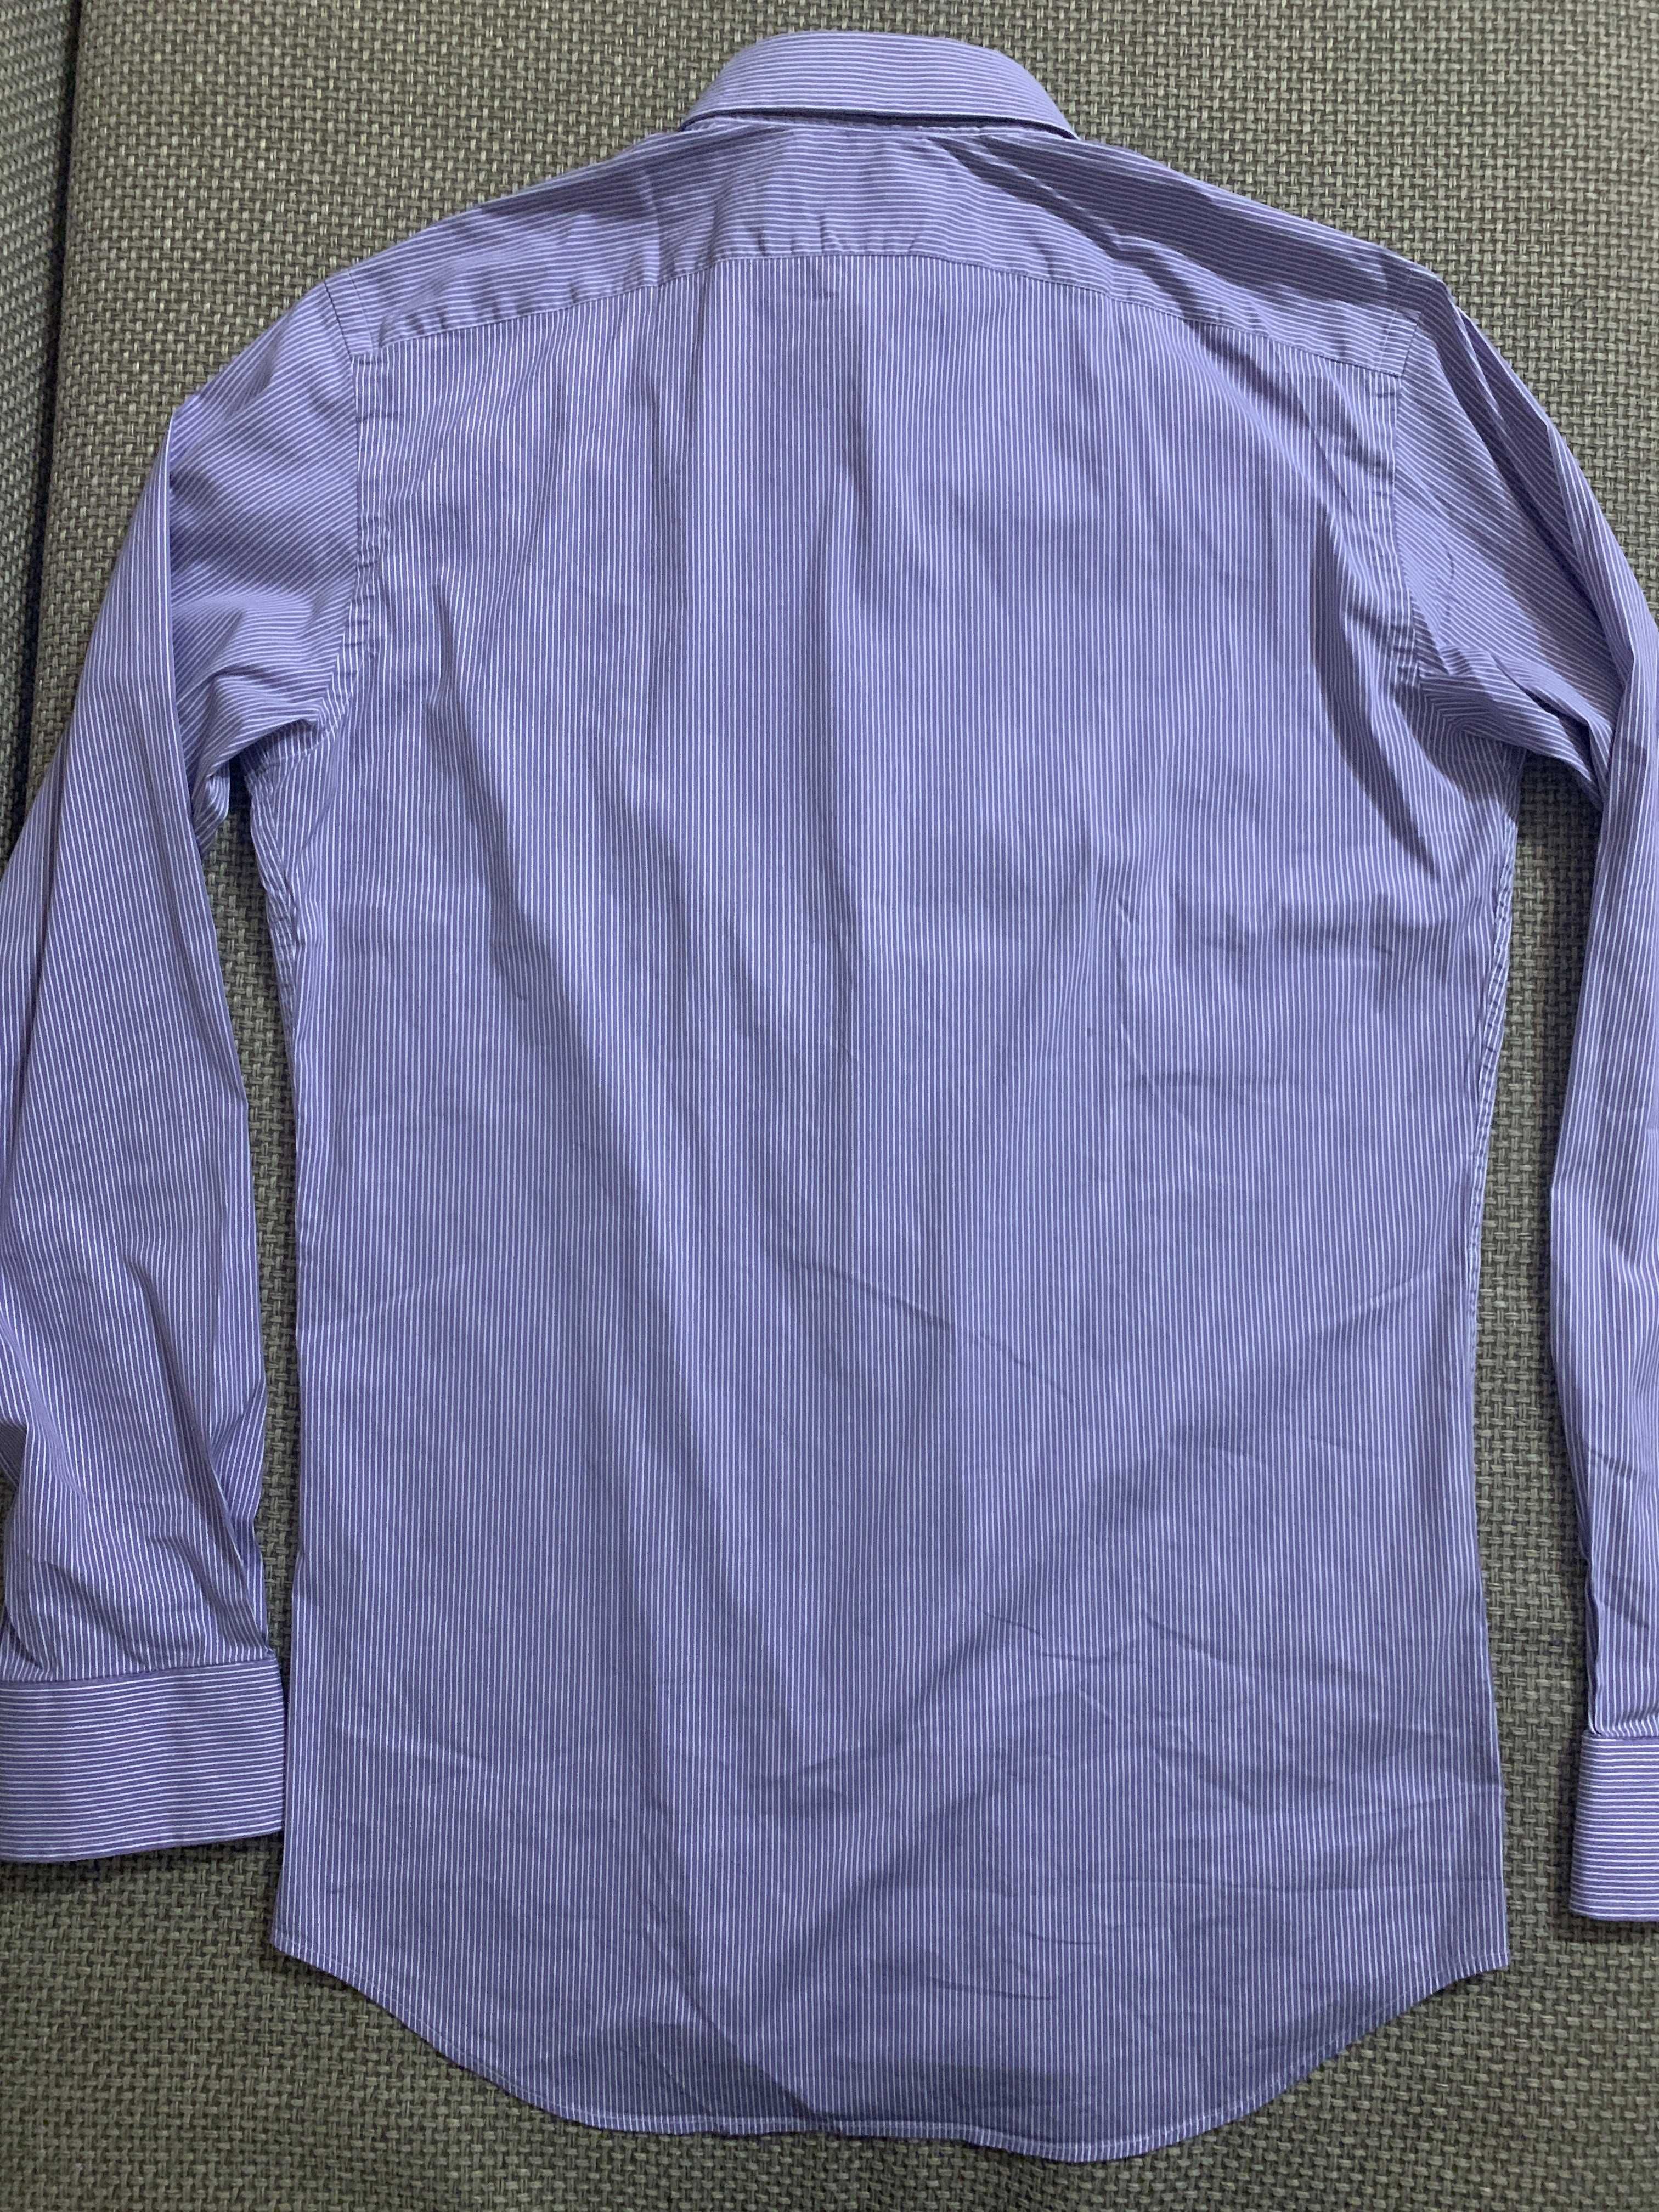 Мужская рубашка Ralph Lauren Tailored Fit с длинным рукавом. L